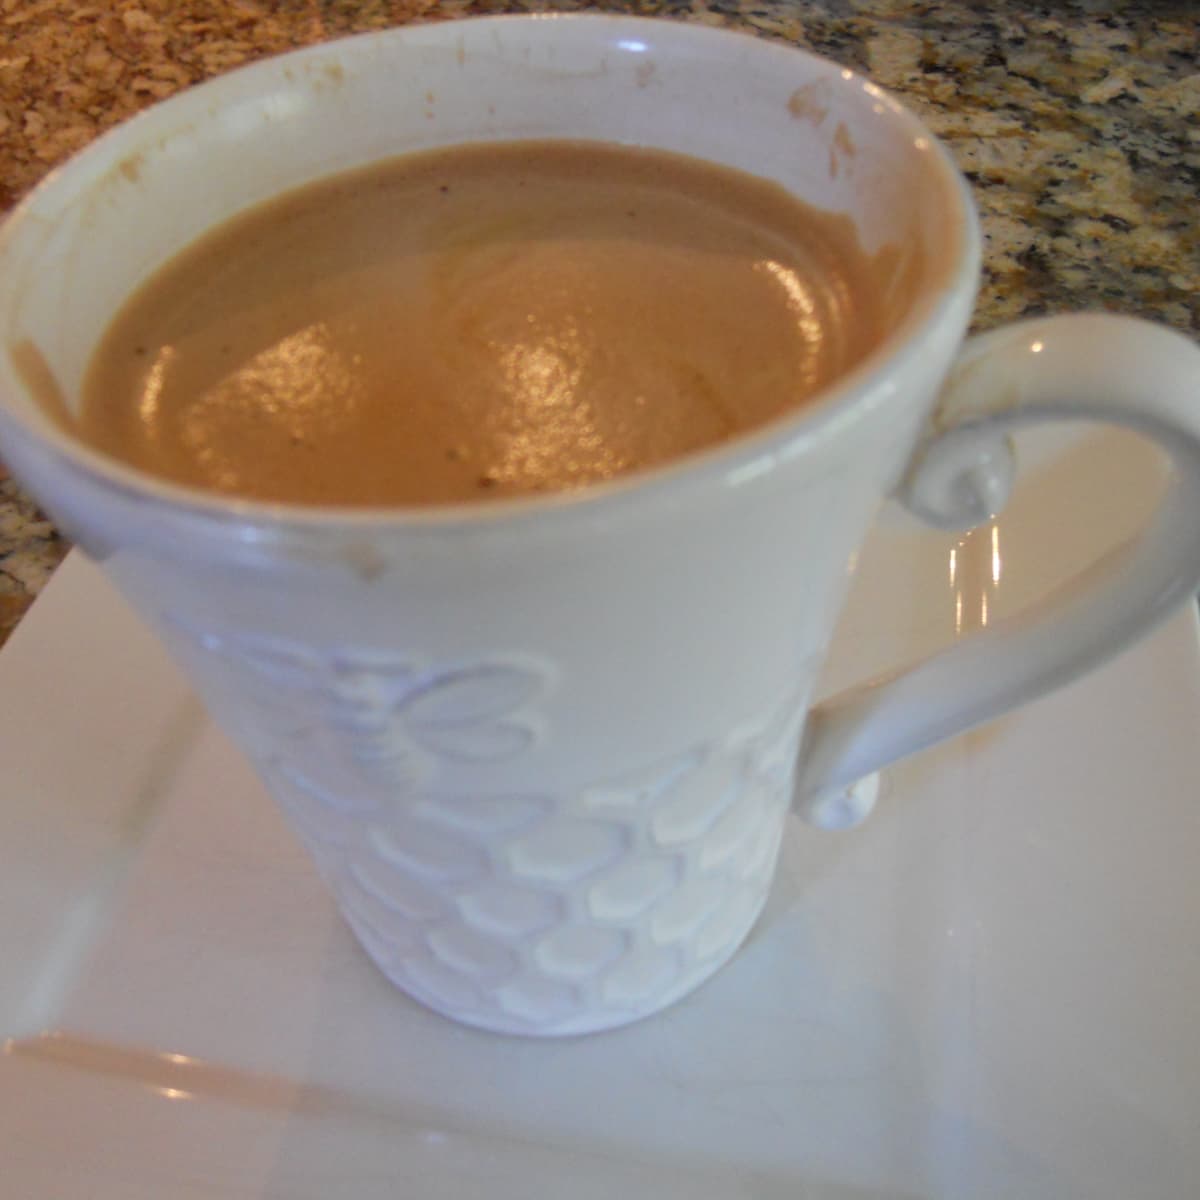 How to Make the Best Cafe Mocha With a Nespresso Espresso Maker